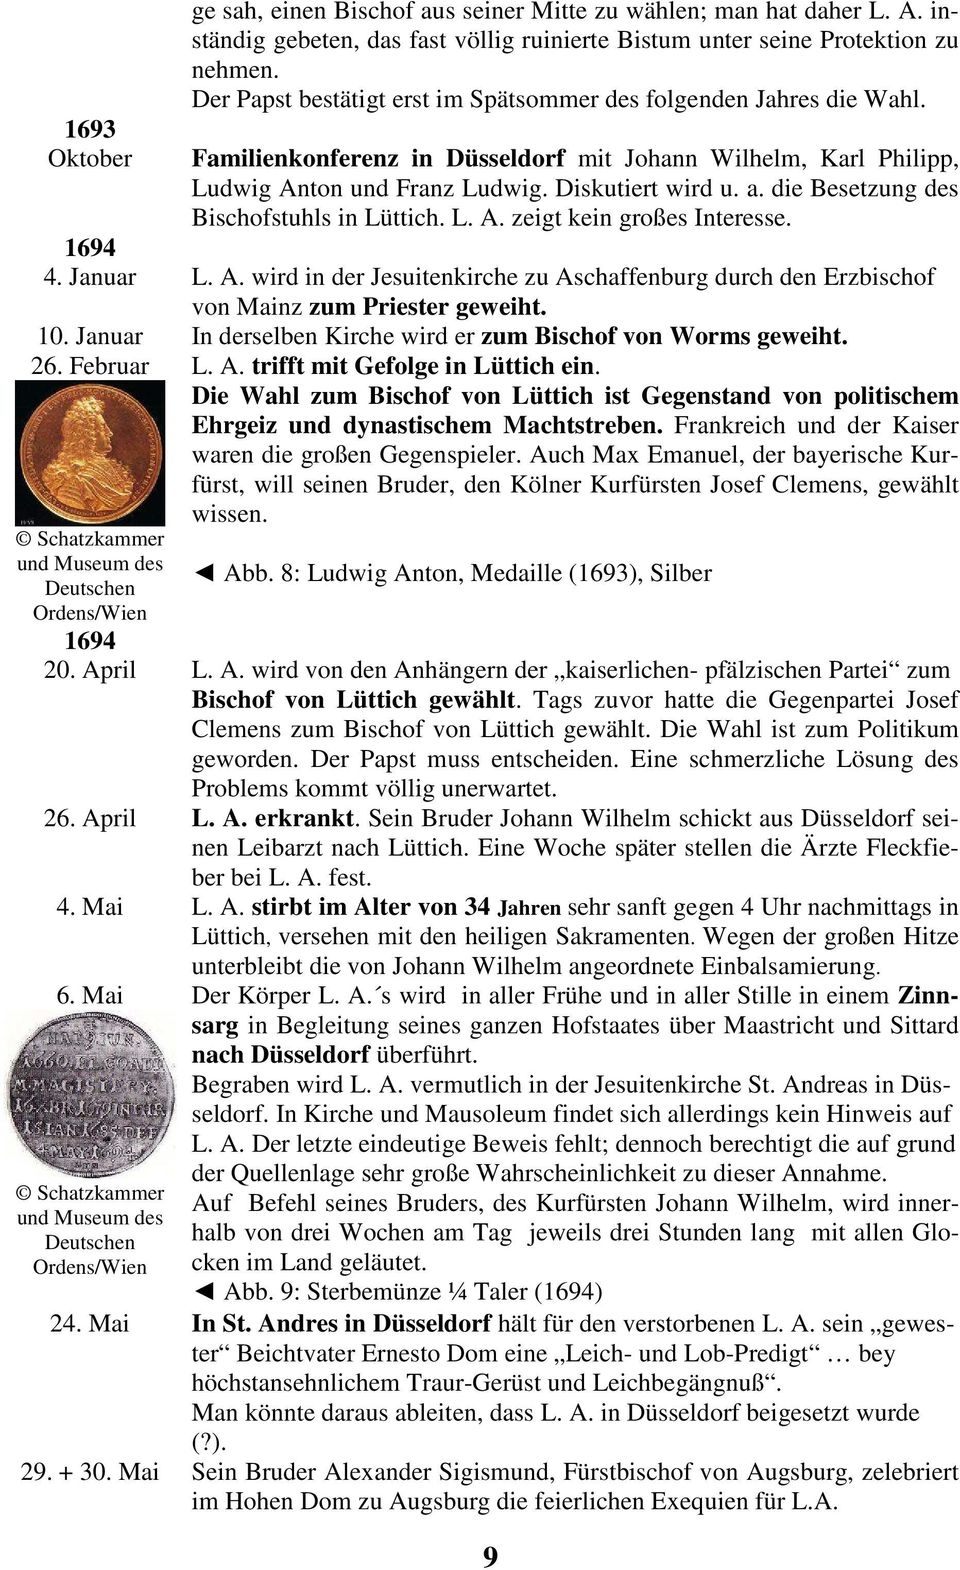 die Besetzung des Bischofstuhls in Lüttich. L. A. zeigt kein großes Interesse. 1694 4. Januar L. A. wird in der Jesuitenkirche zu Aschaffenburg durch den Erzbischof von Mainz zum Priester geweiht. 10.